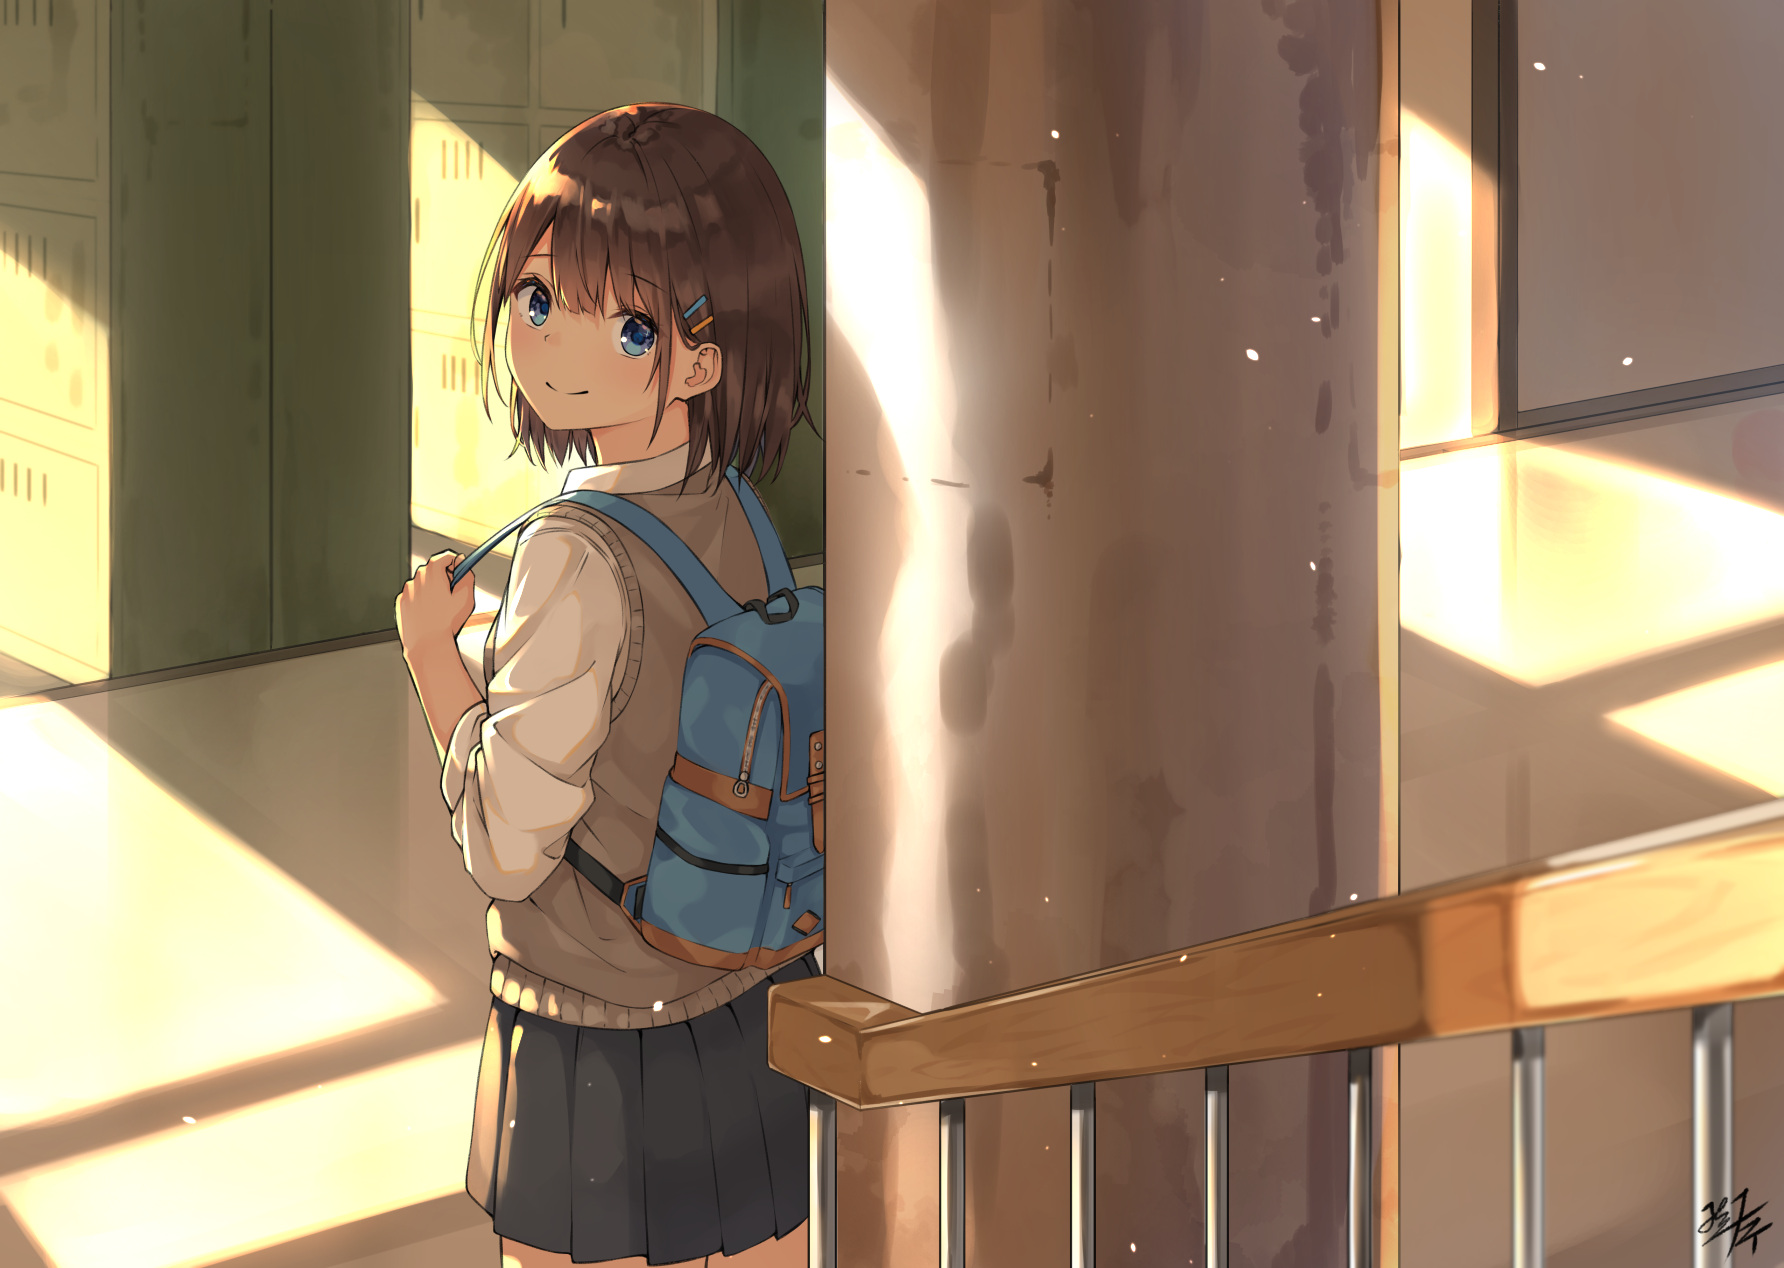 Anime 1784x1268 anime girls anime digital art artwork 2D portrait Miko fly school uniform backpacks short hair brunette blue eyes looking back smiling